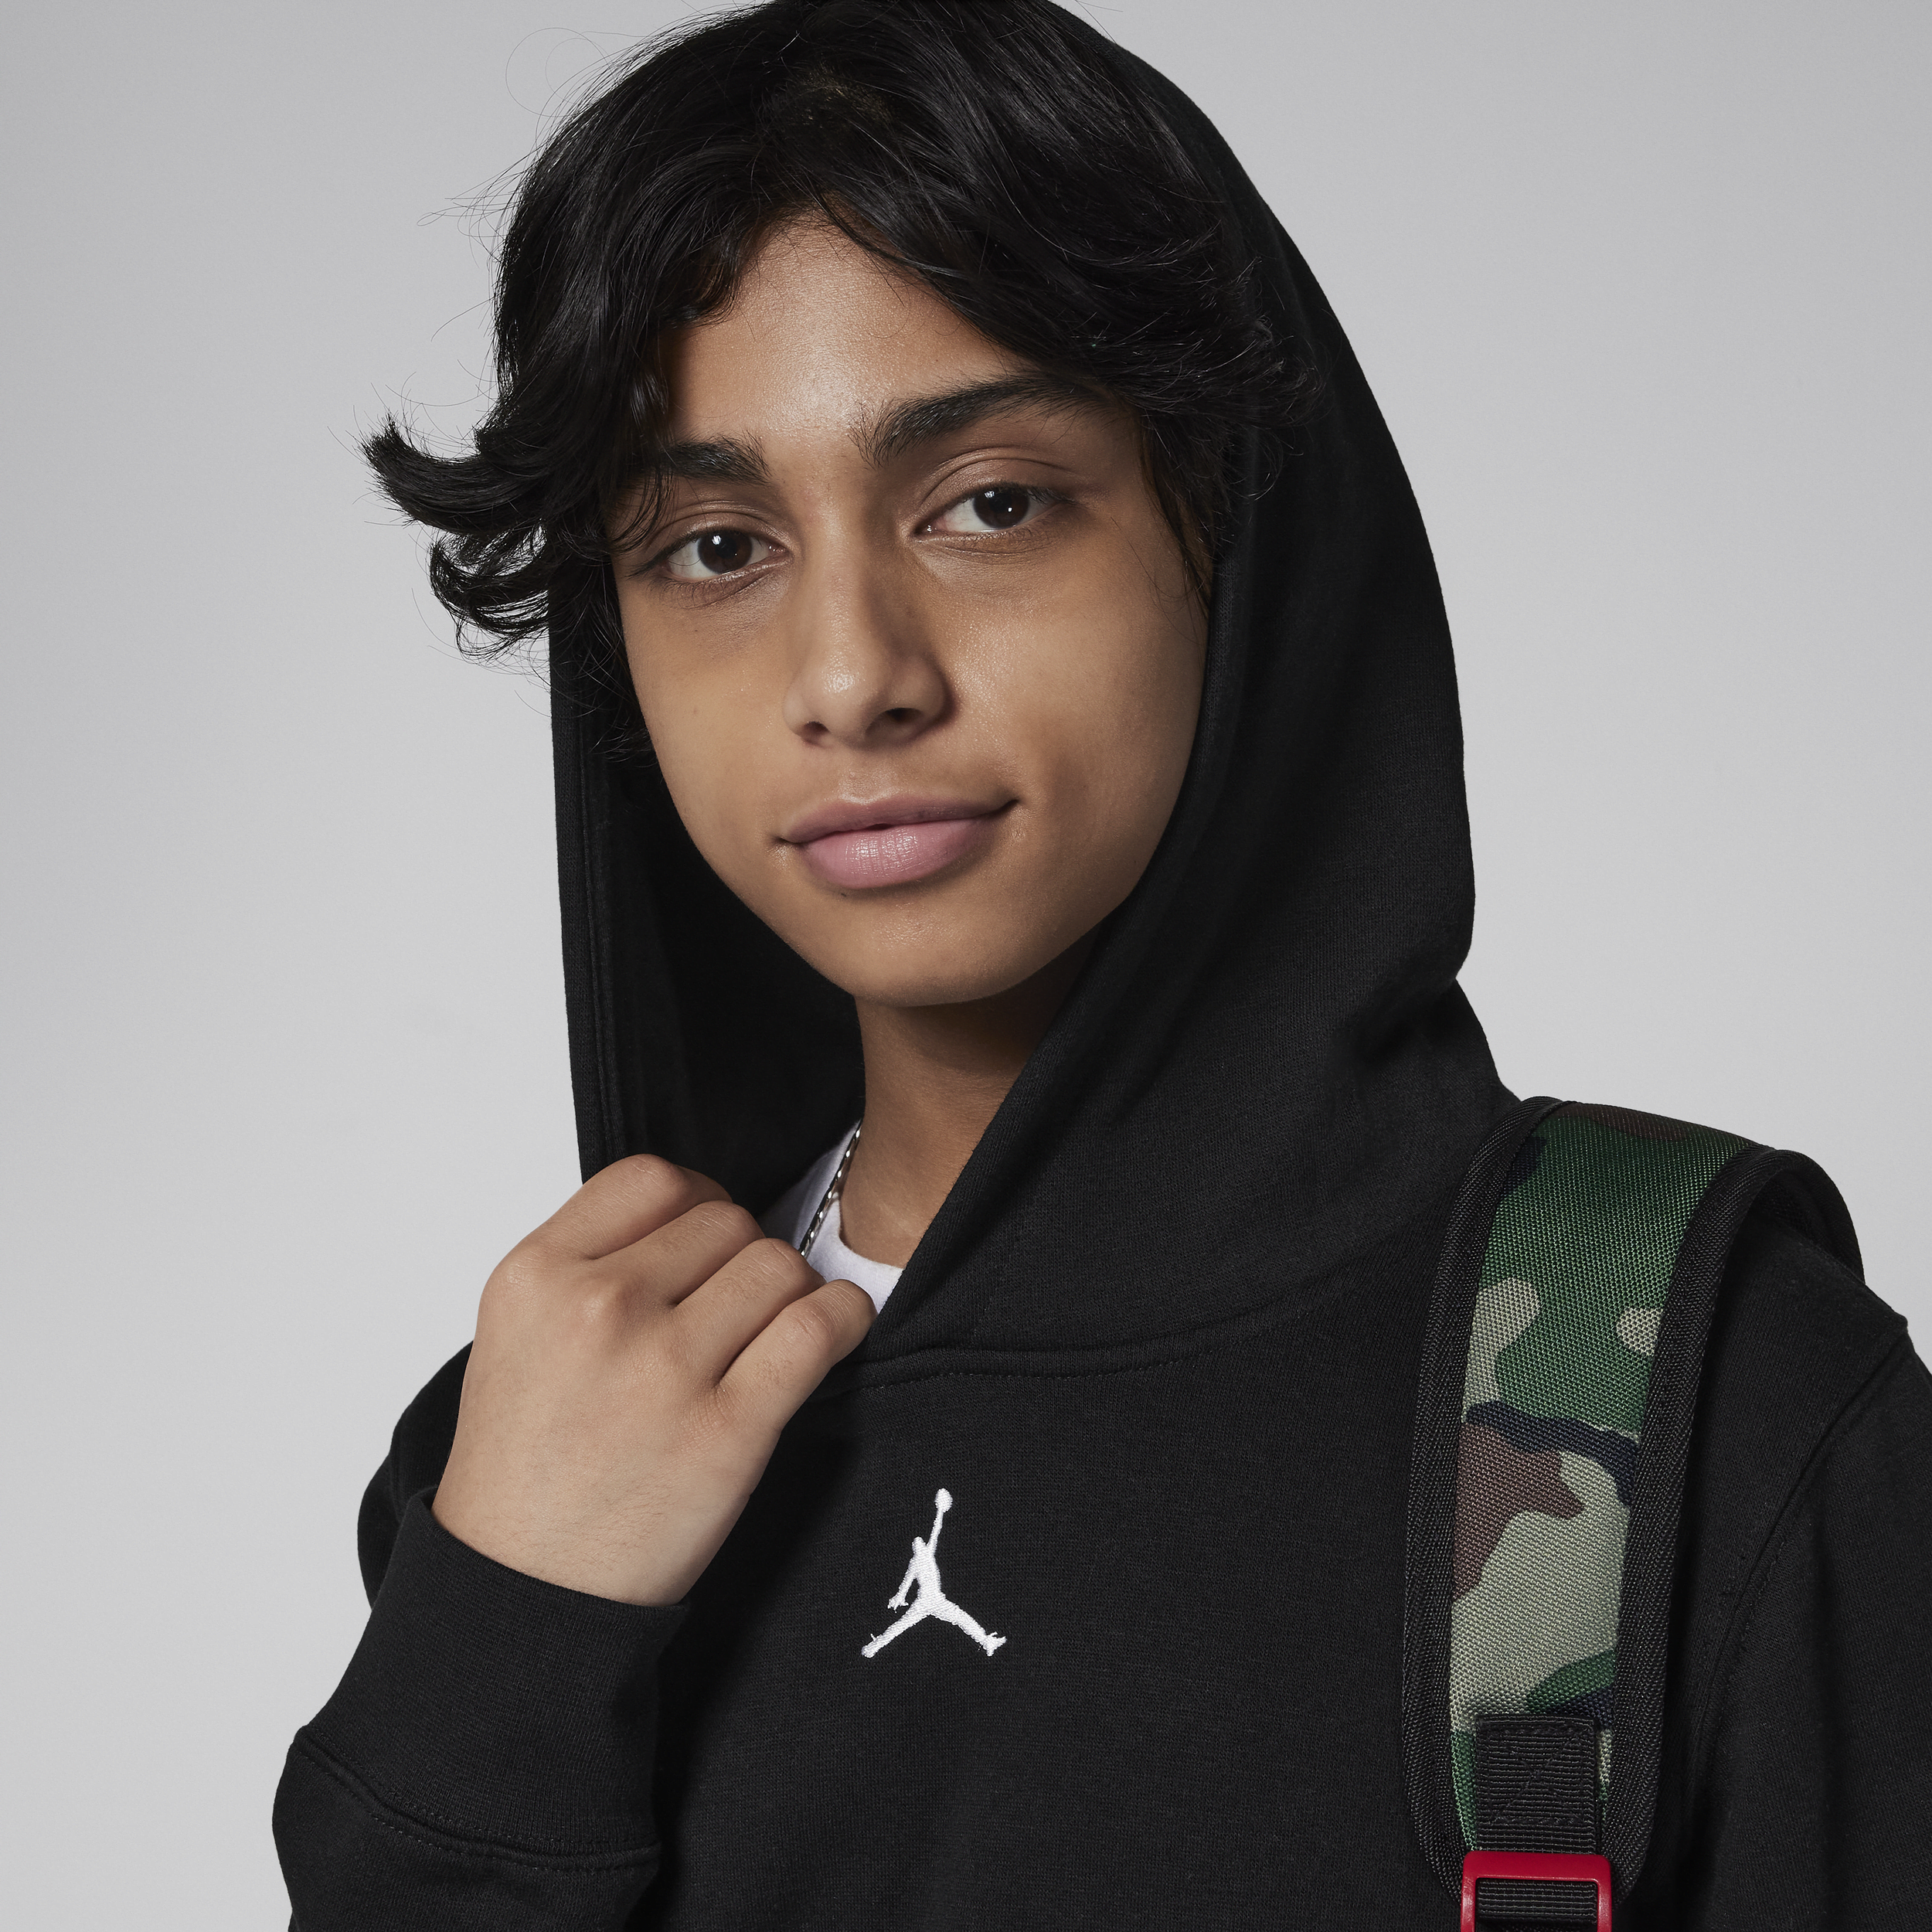 Jordan Chicago Bulls Courtside Statement Edition NBA-hoodie van fleece voor kids Zwart